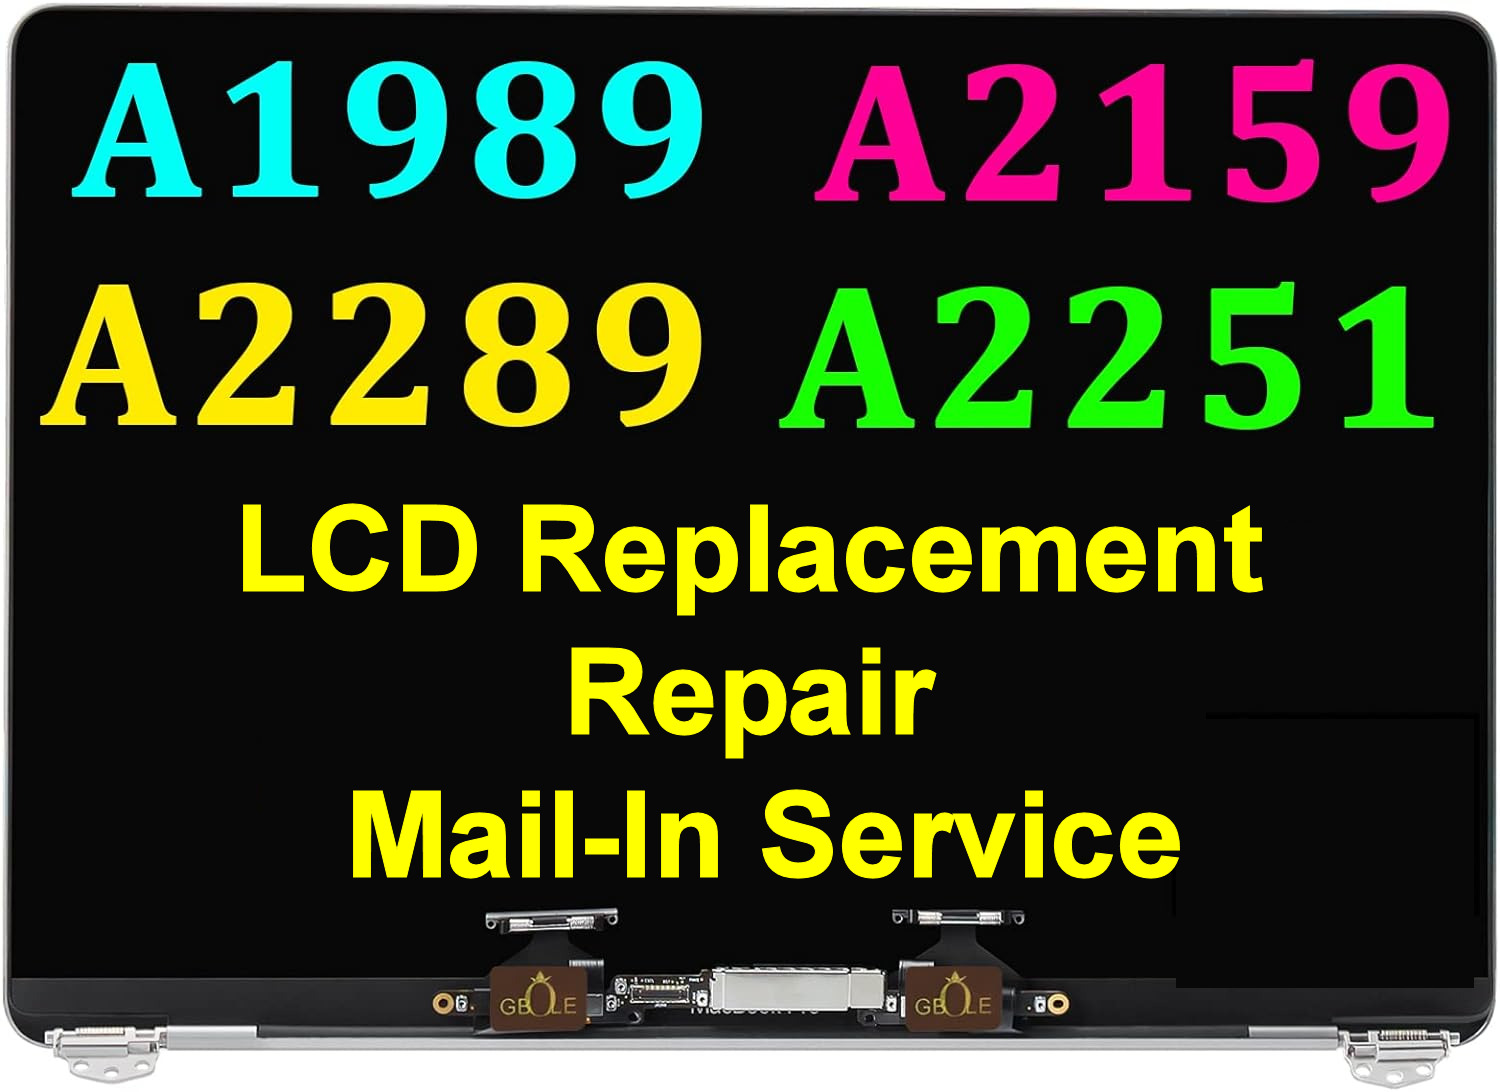 A1989-A2159-A2289-A2251 Macbook LCD Screen Replacement Repair Mail-In Service